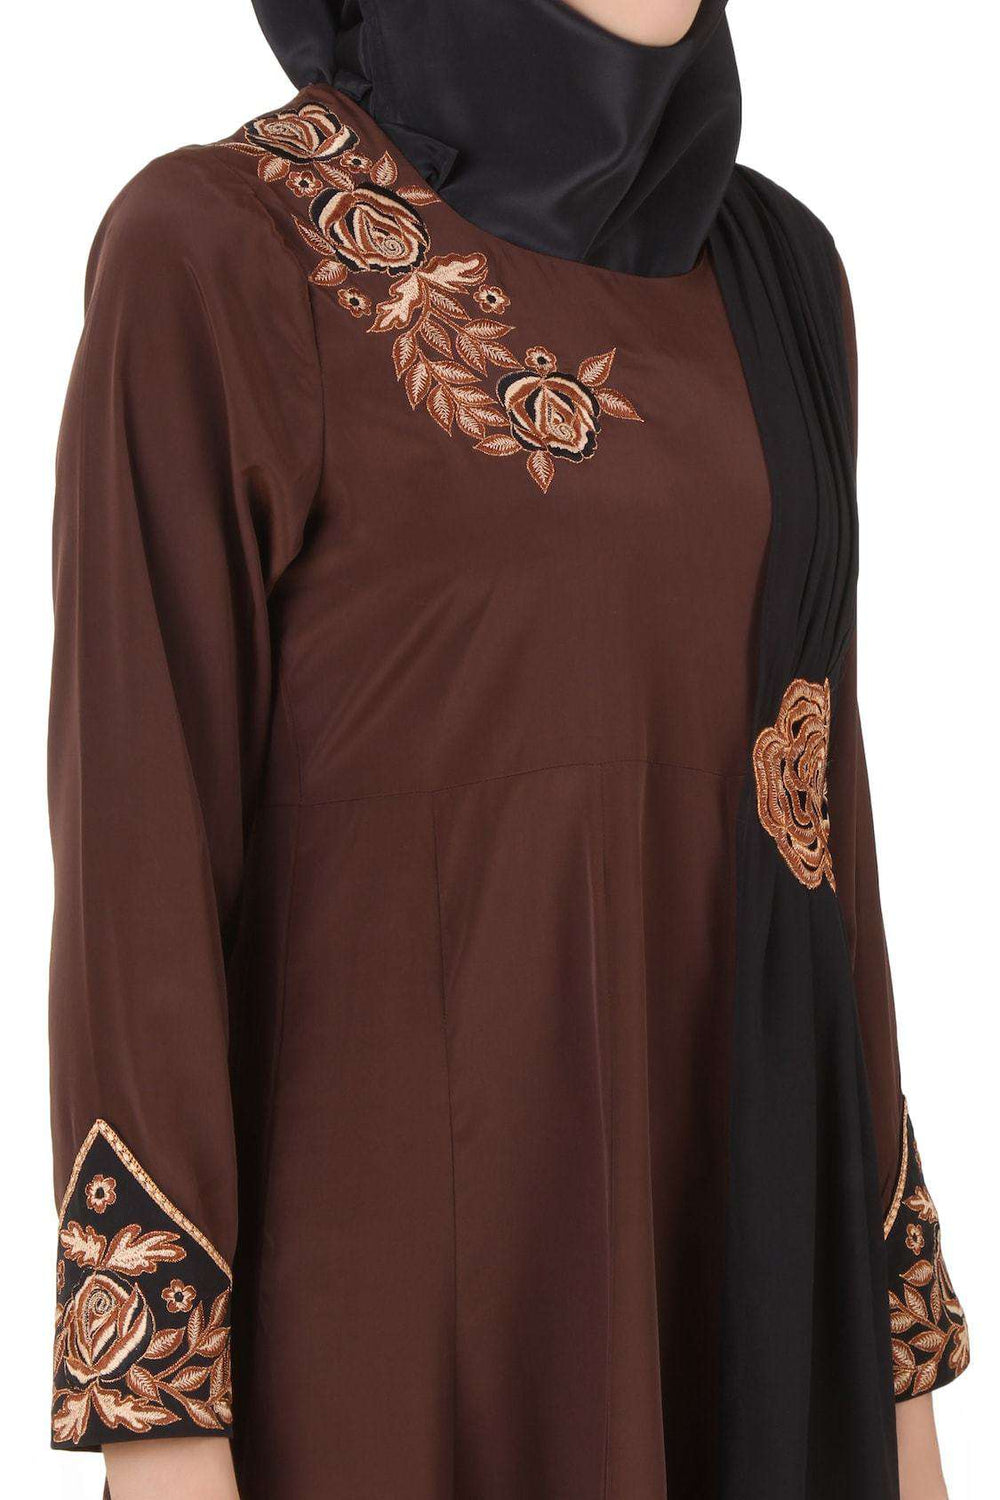 Laaibah Brown Crepe and Georgette Eid Abaya Design